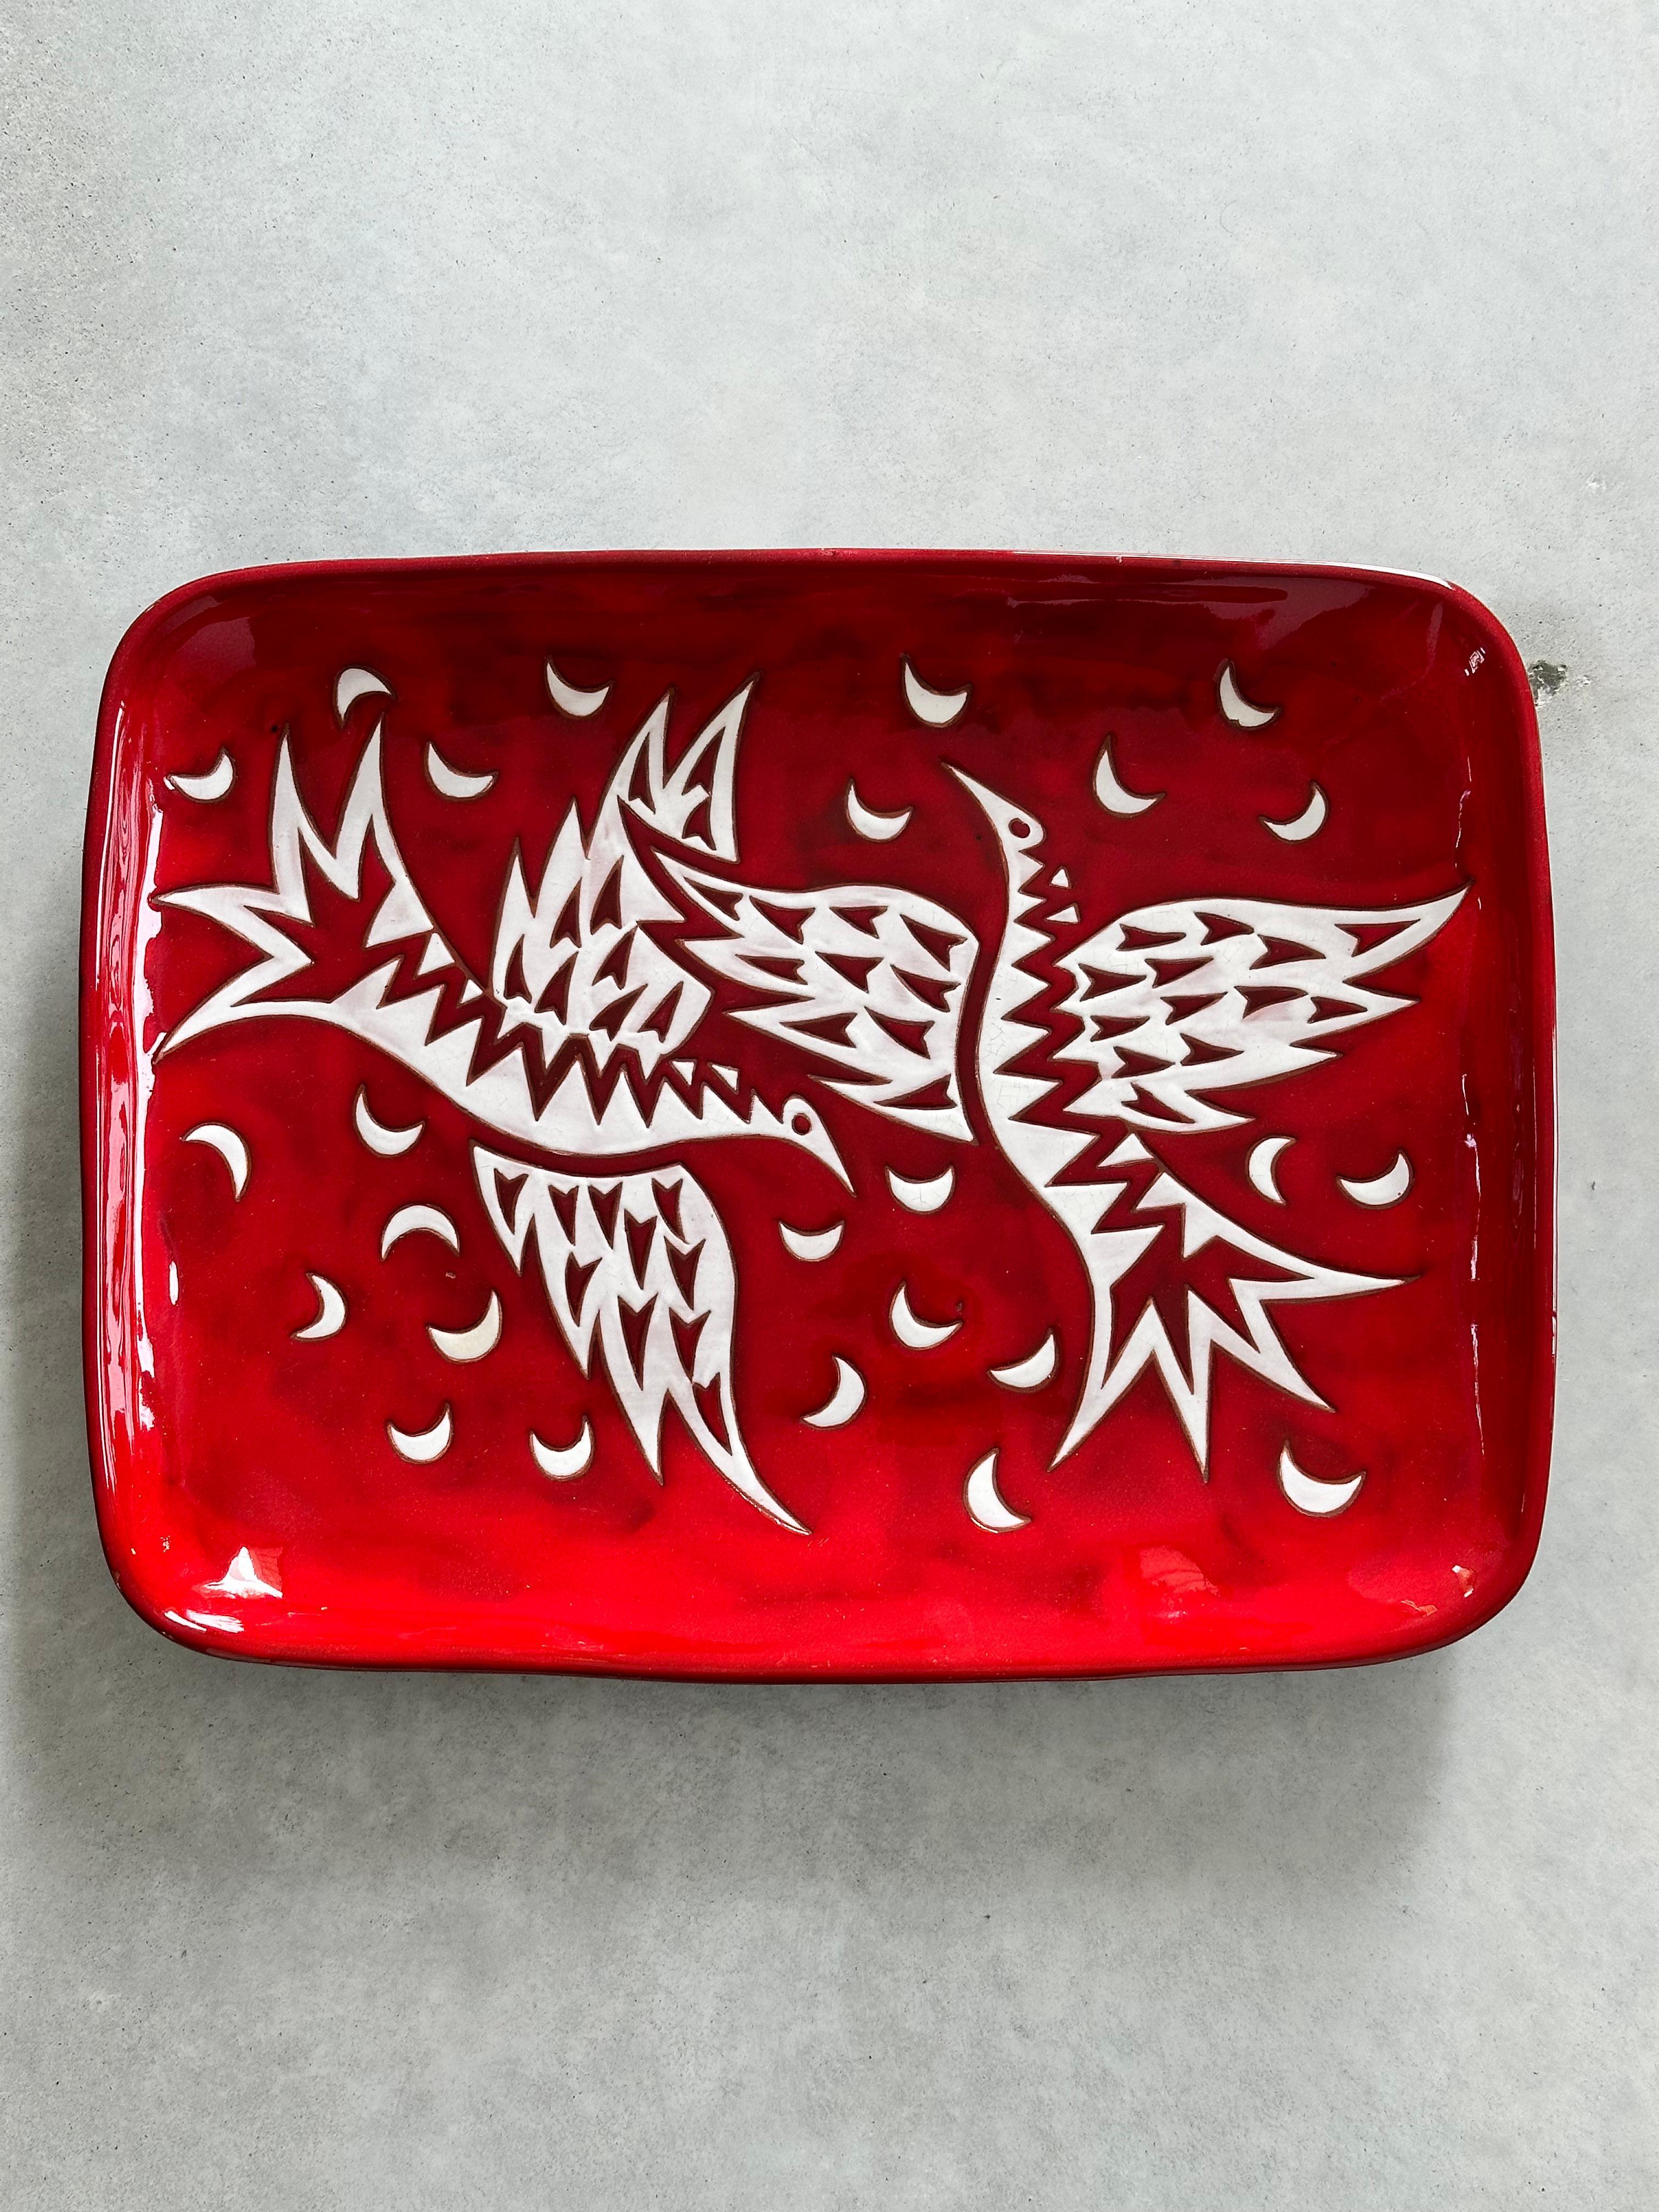 Grand plat en céramique provenant des ateliers de poterie Sant-Vicens à Perpignan (sud de la France).

Dessin réalisé par Jean Picart Le Doux.

Deux oiseaux stylisés blancs sur un fond rouge intense.

Série limitée à 50 exemplaires, celui-ci est